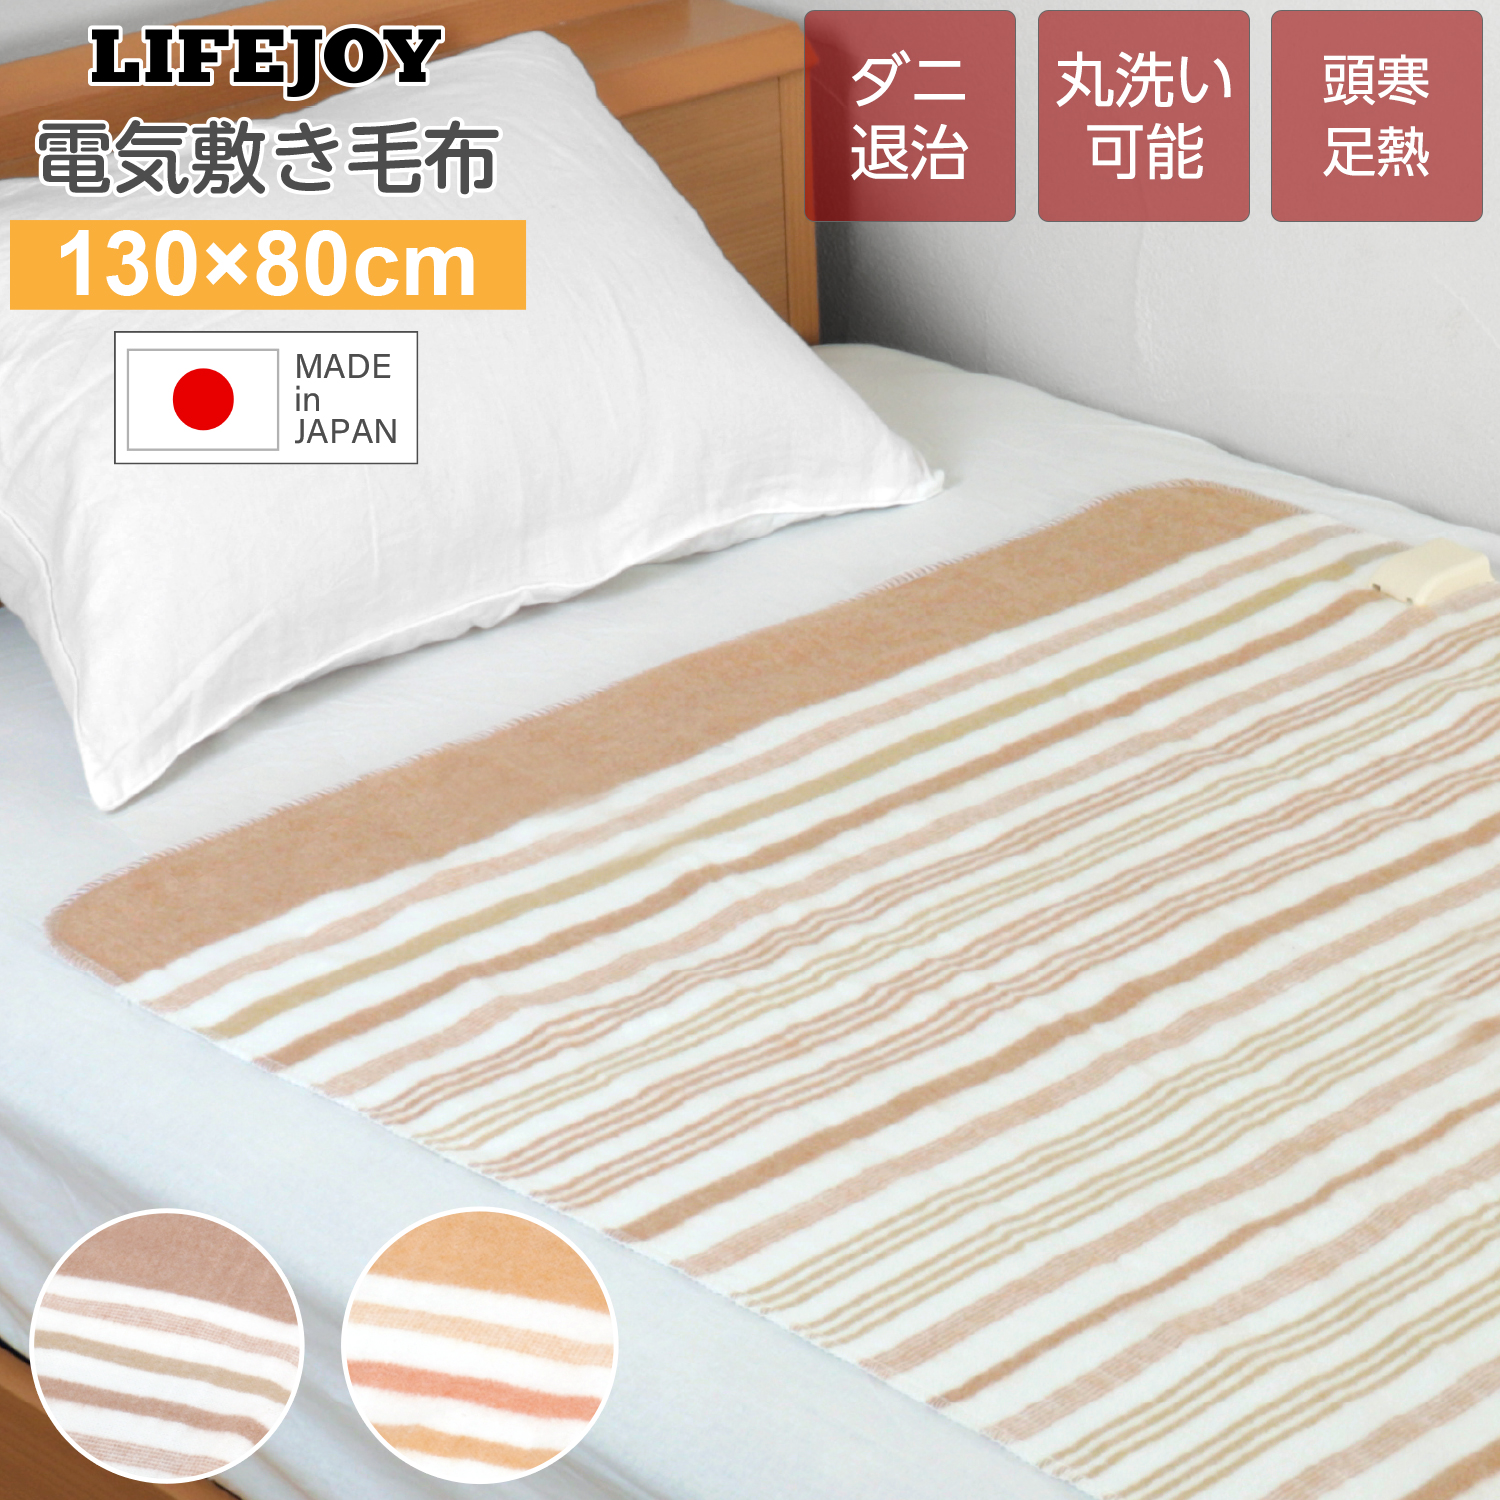 広電 電気敷毛布 電気毛布 130×80cm - 空調